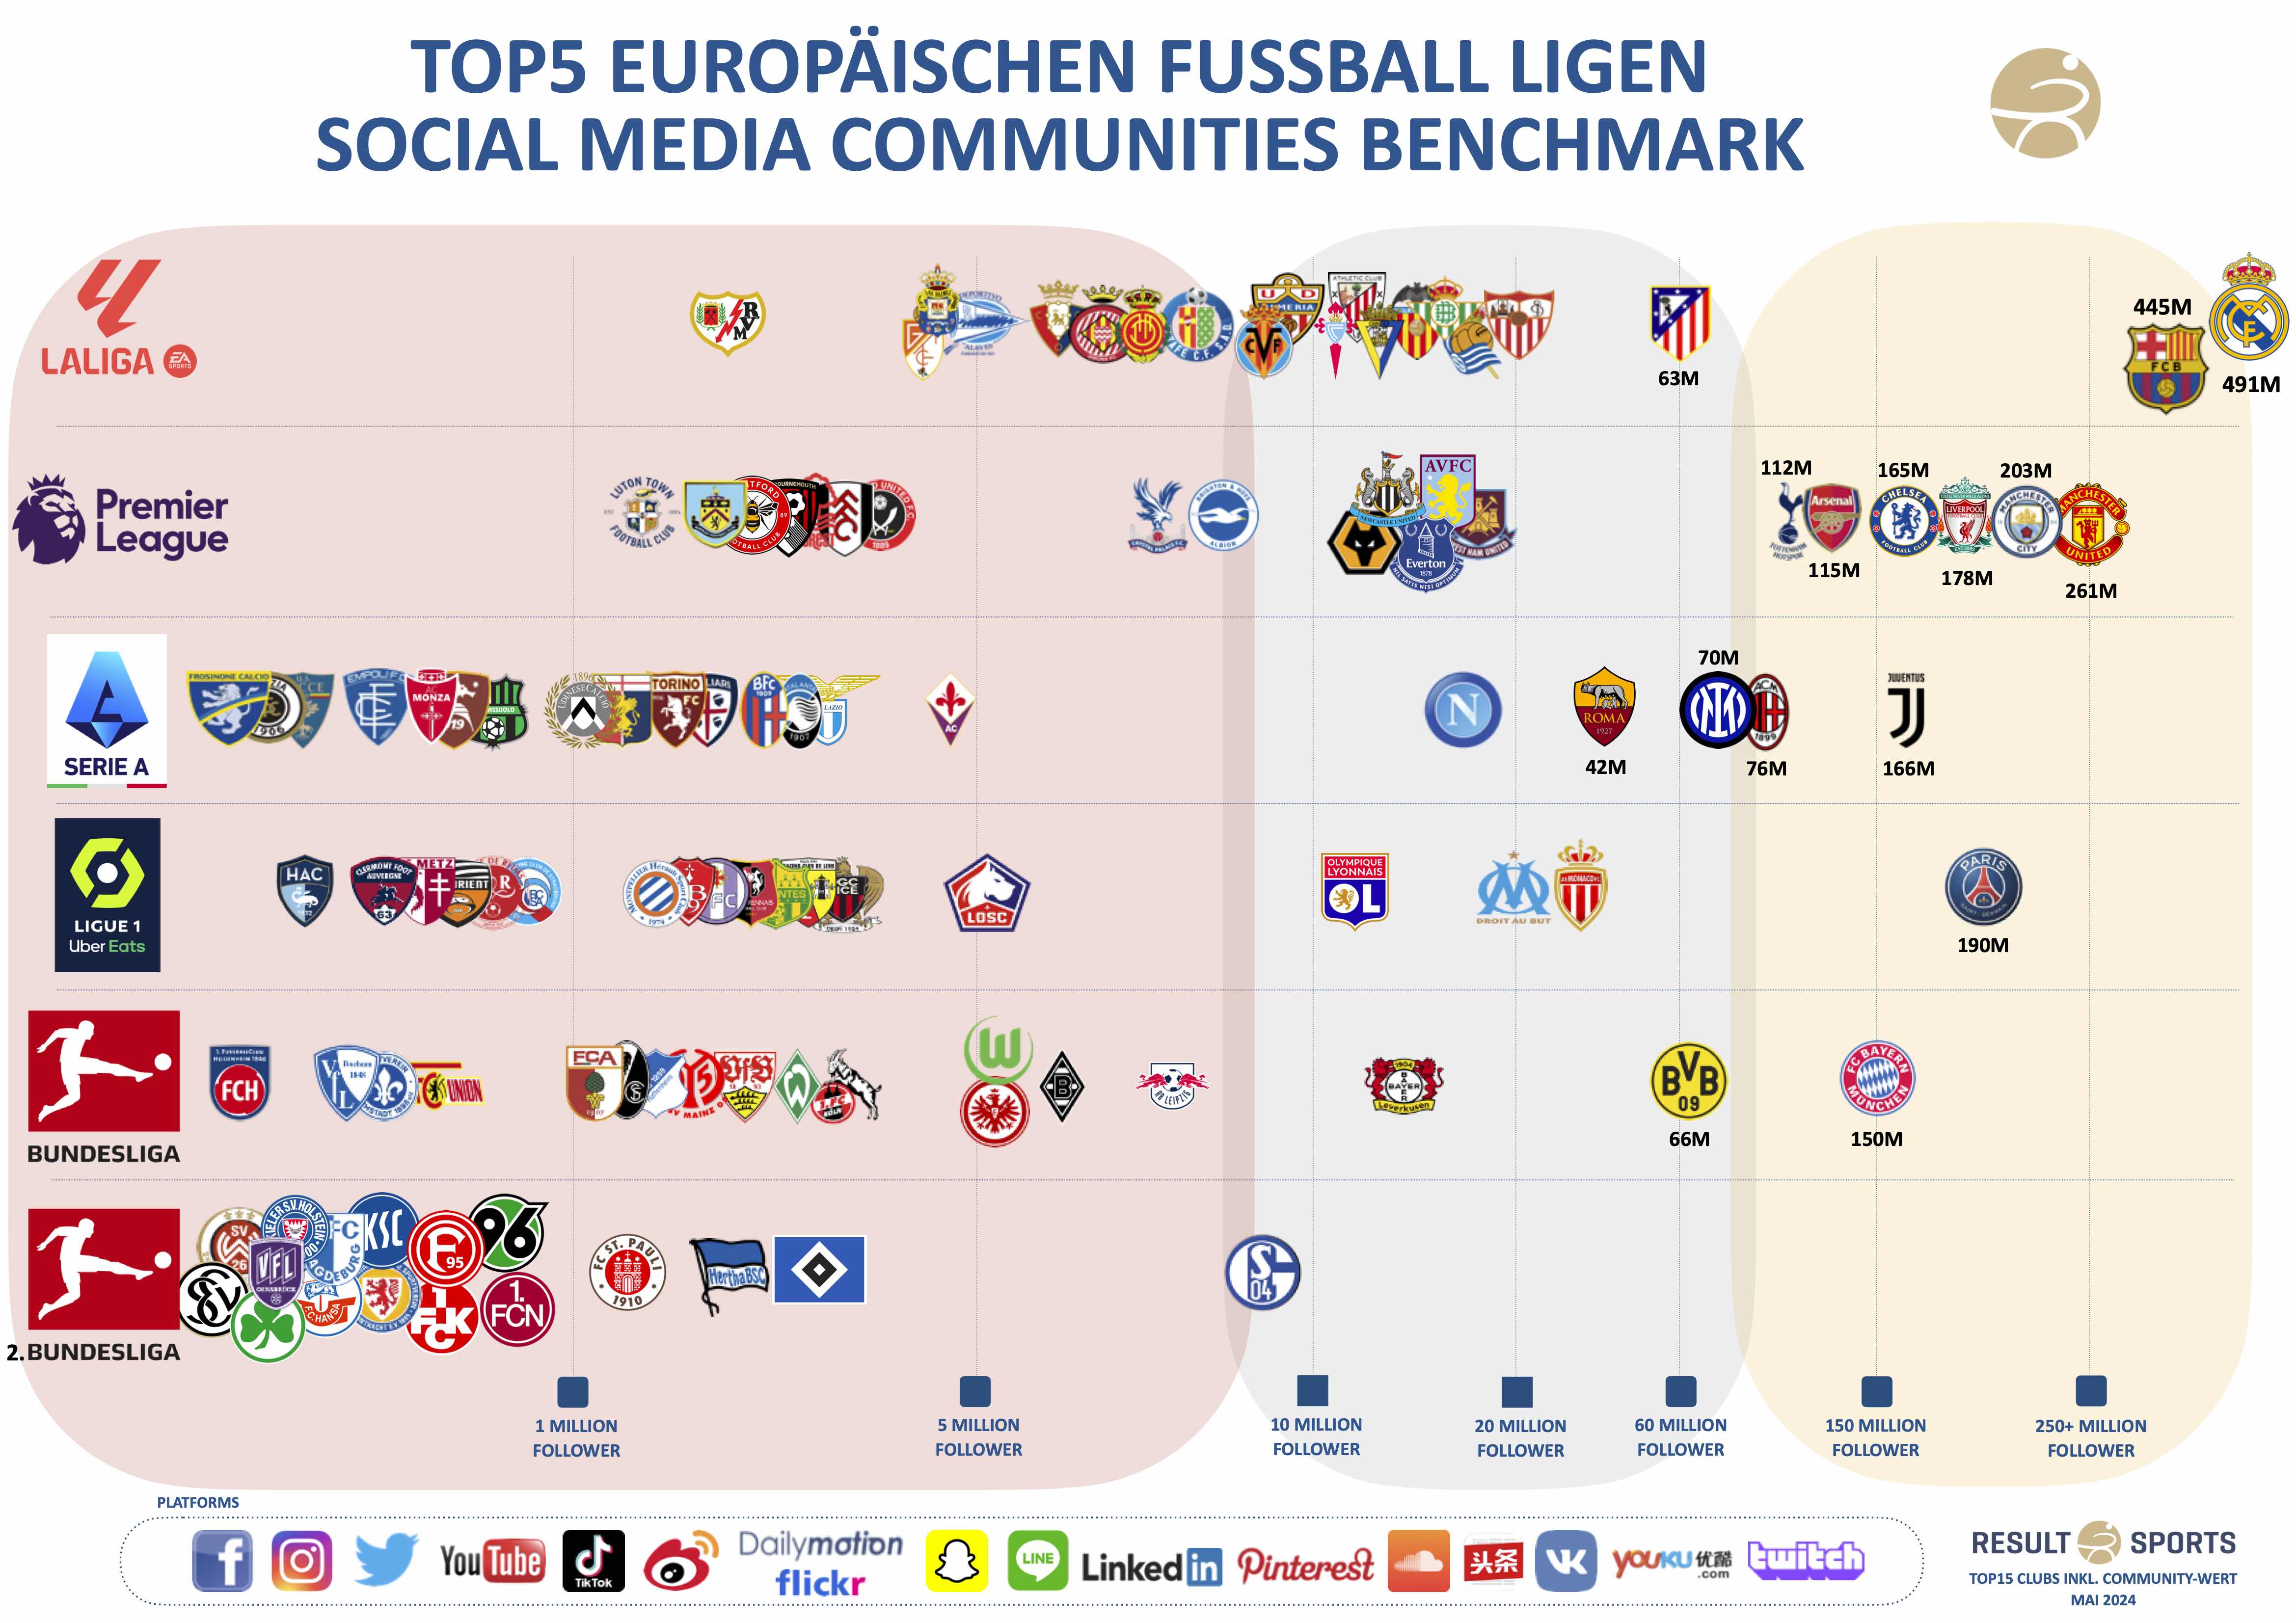 Top5_Social Media_Europa_Result_OMR.jpg